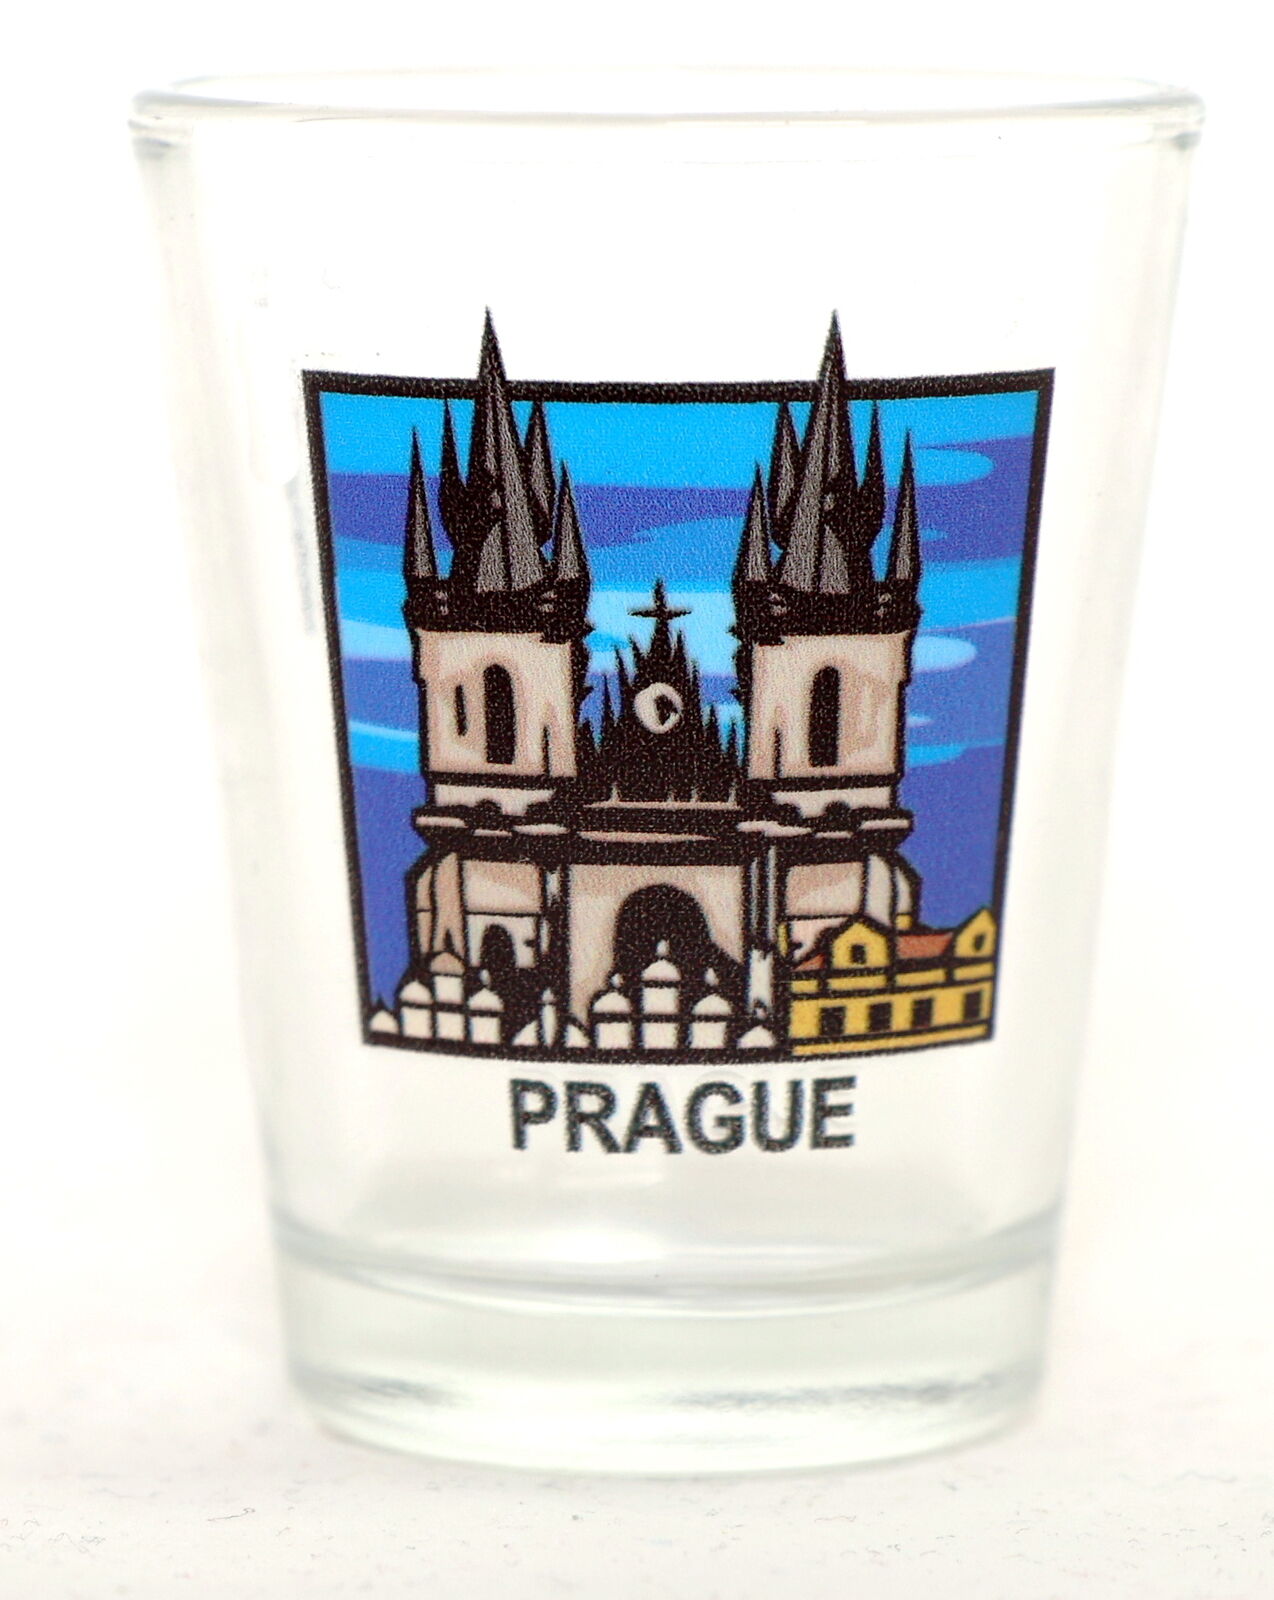 PRAGUE PRAHA CZECH REPUBLIC SHOT GLASS SHOTGLASS